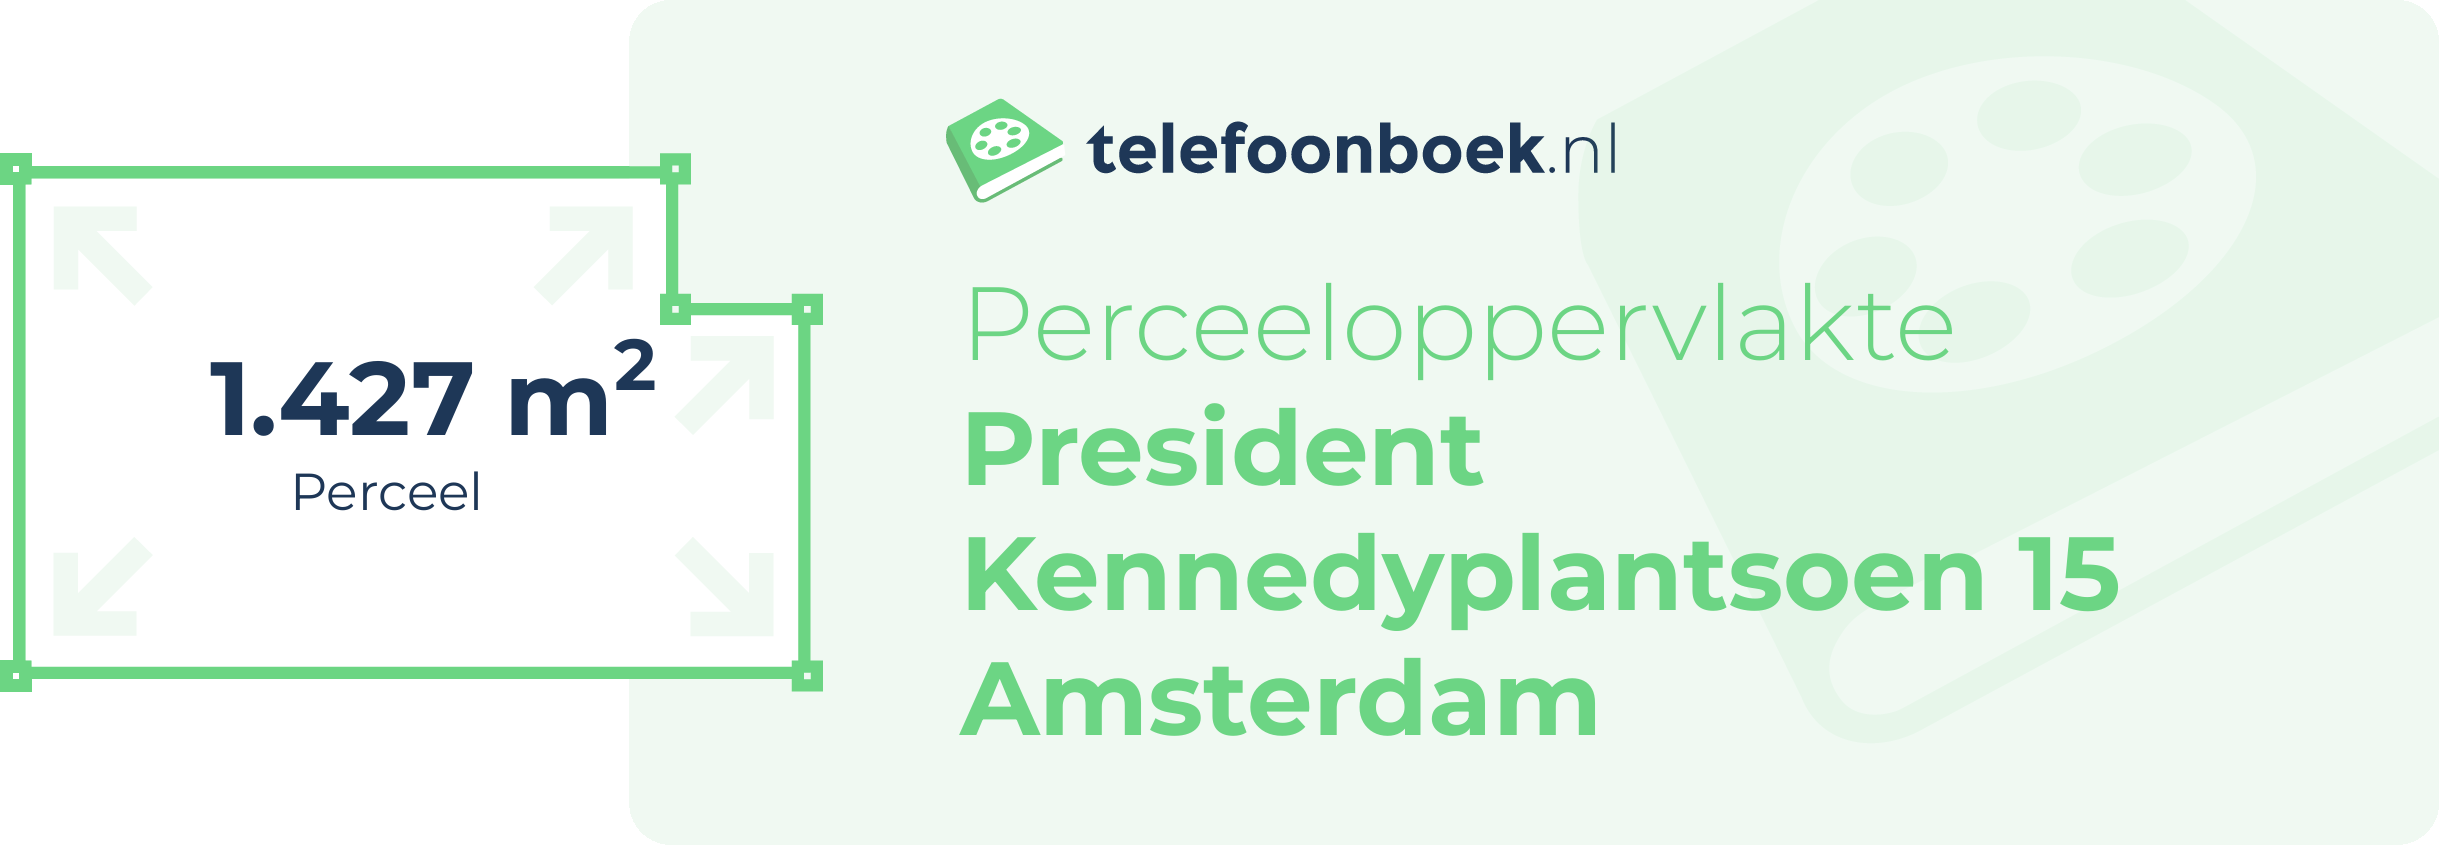 Perceeloppervlakte President Kennedyplantsoen 15 Amsterdam